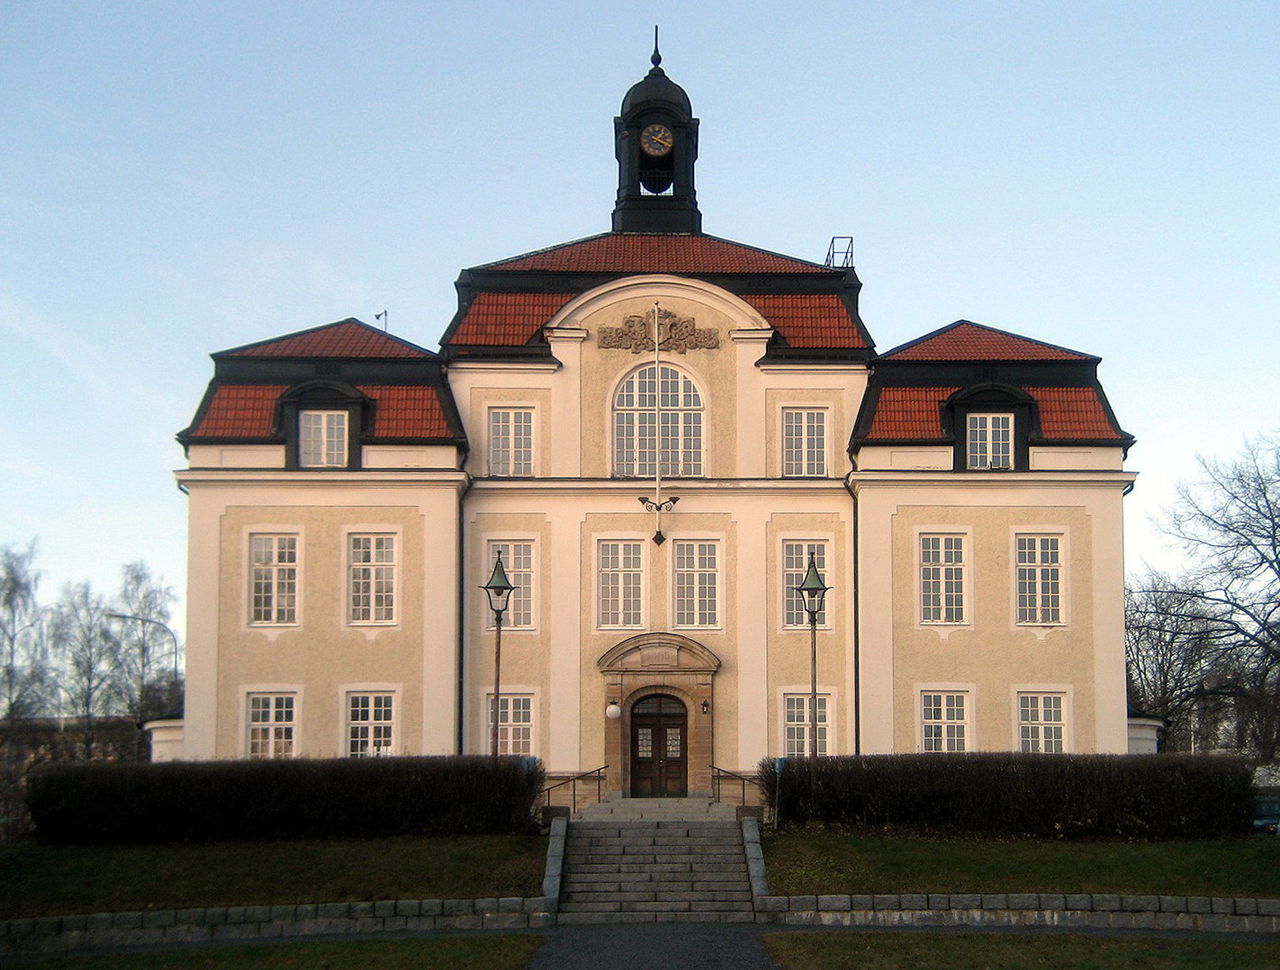  Är rådhuset i Örnsköldsvik Sveriges vackraste byggnad genom tiderna?